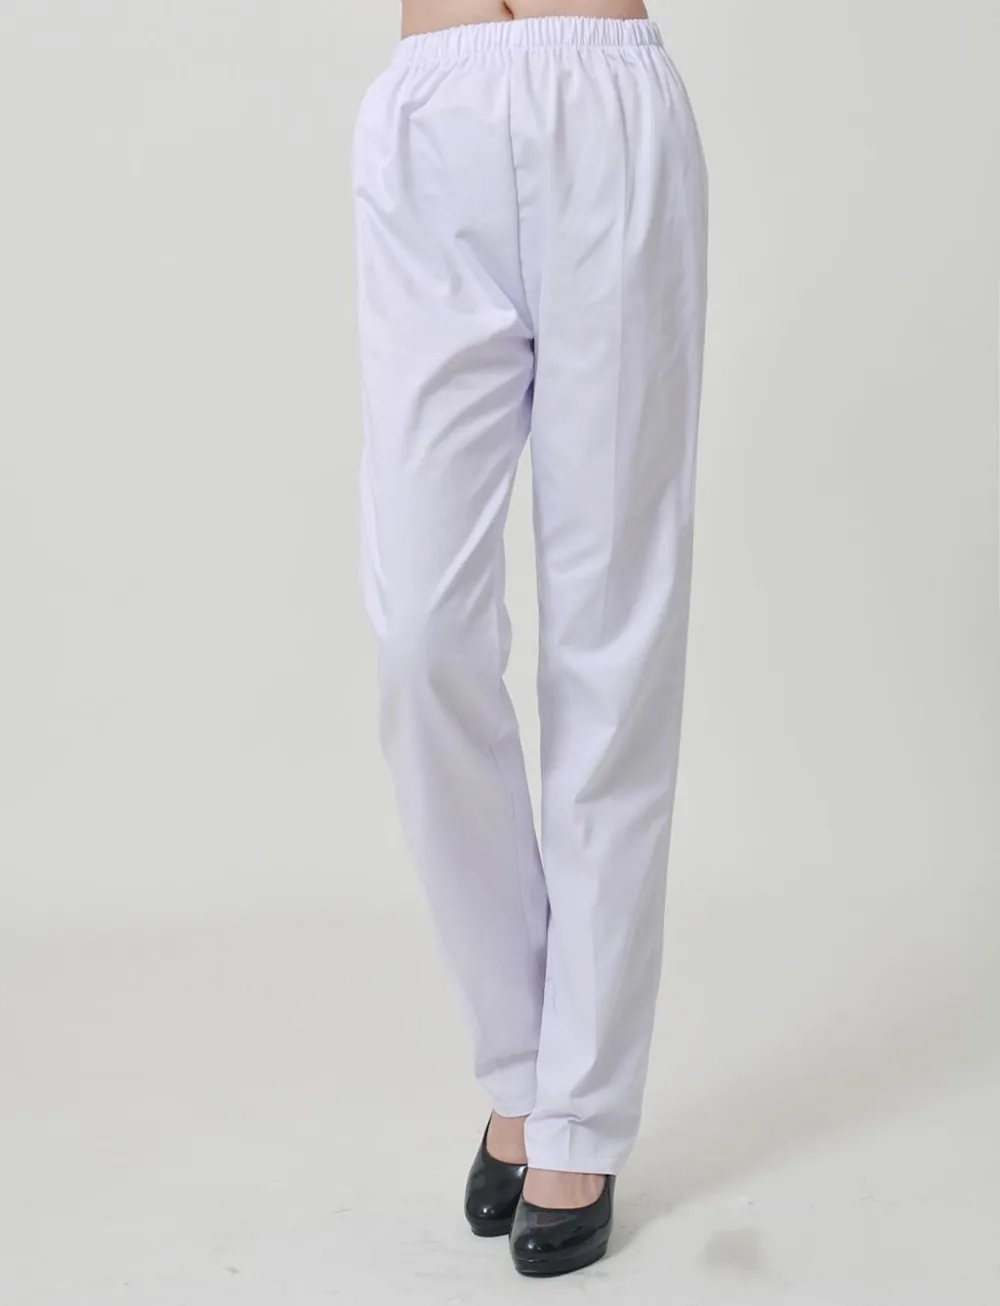 Женская медицинская форма для больниц, медсестры, брюки белого цвета, рабочие брюки, эластичные медицинские брюки, женские брюки из 100%